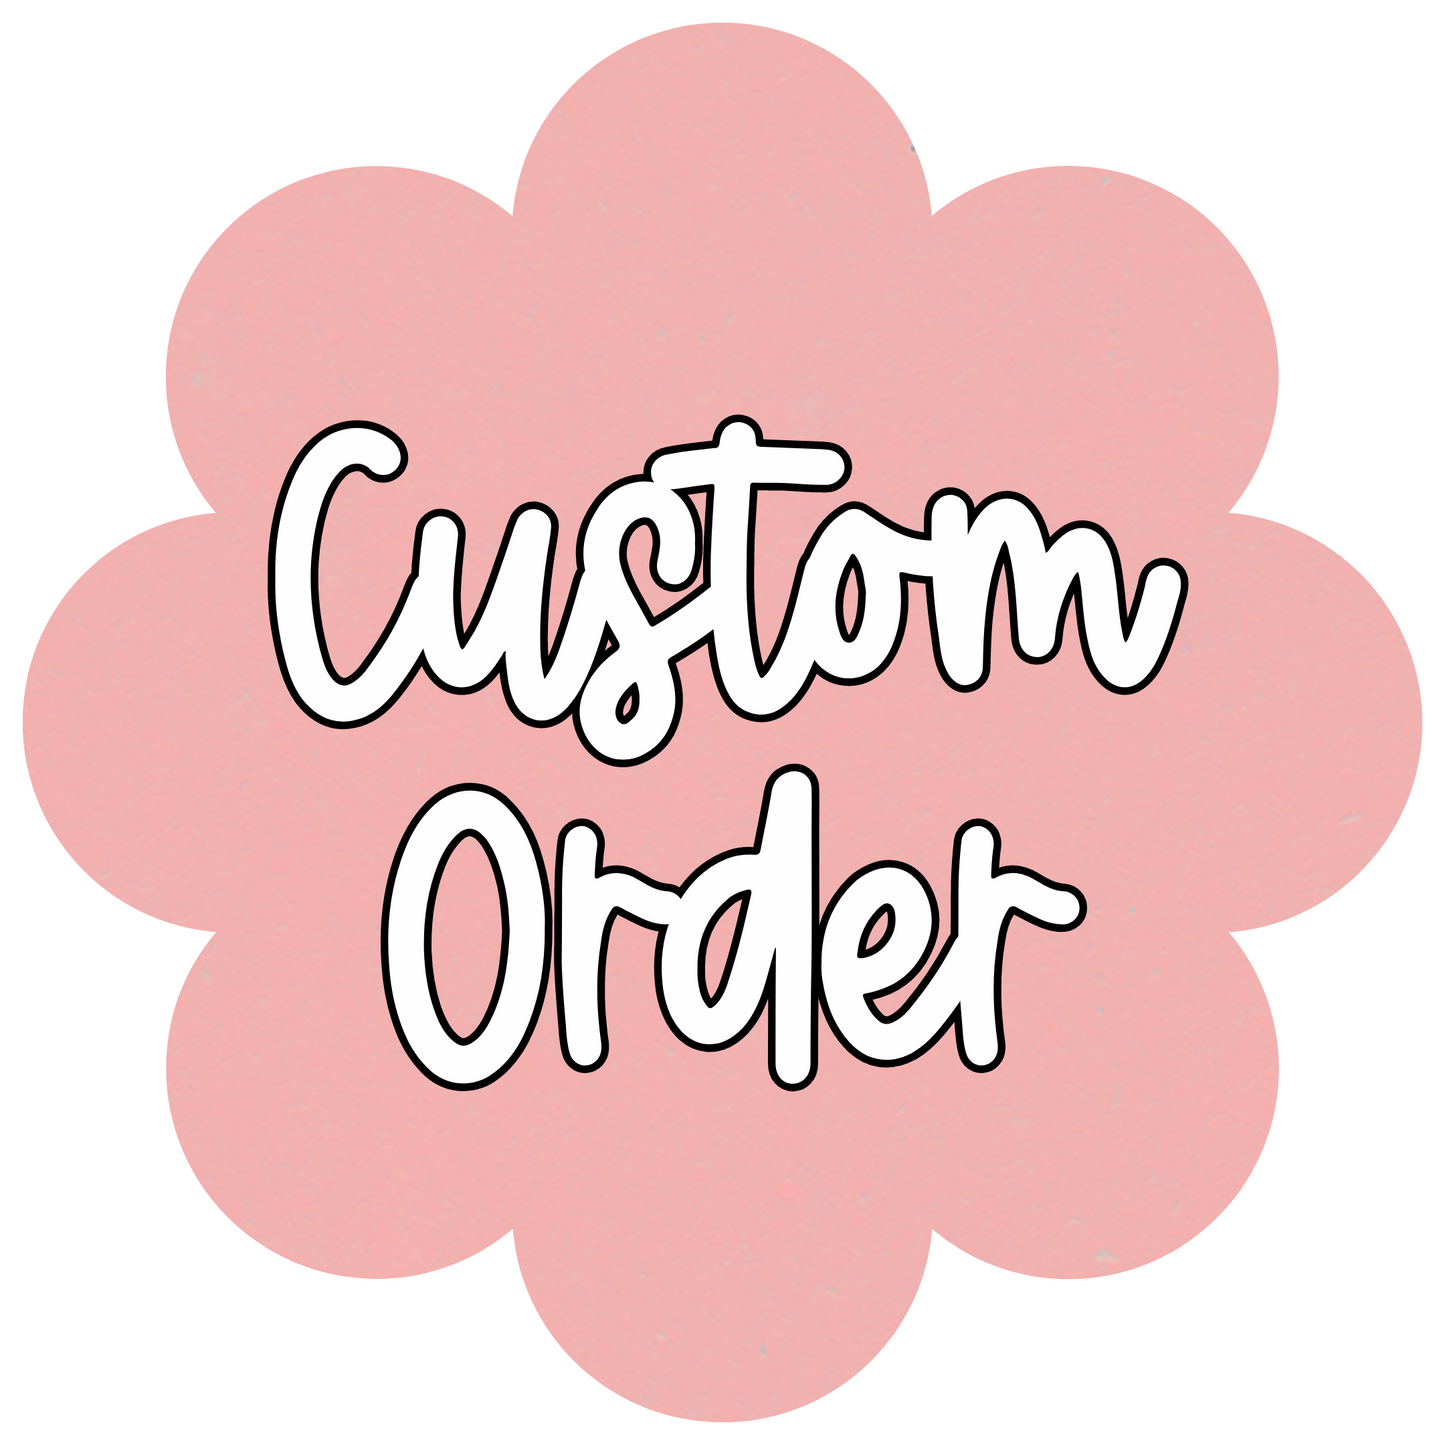 Custom Order For Henry